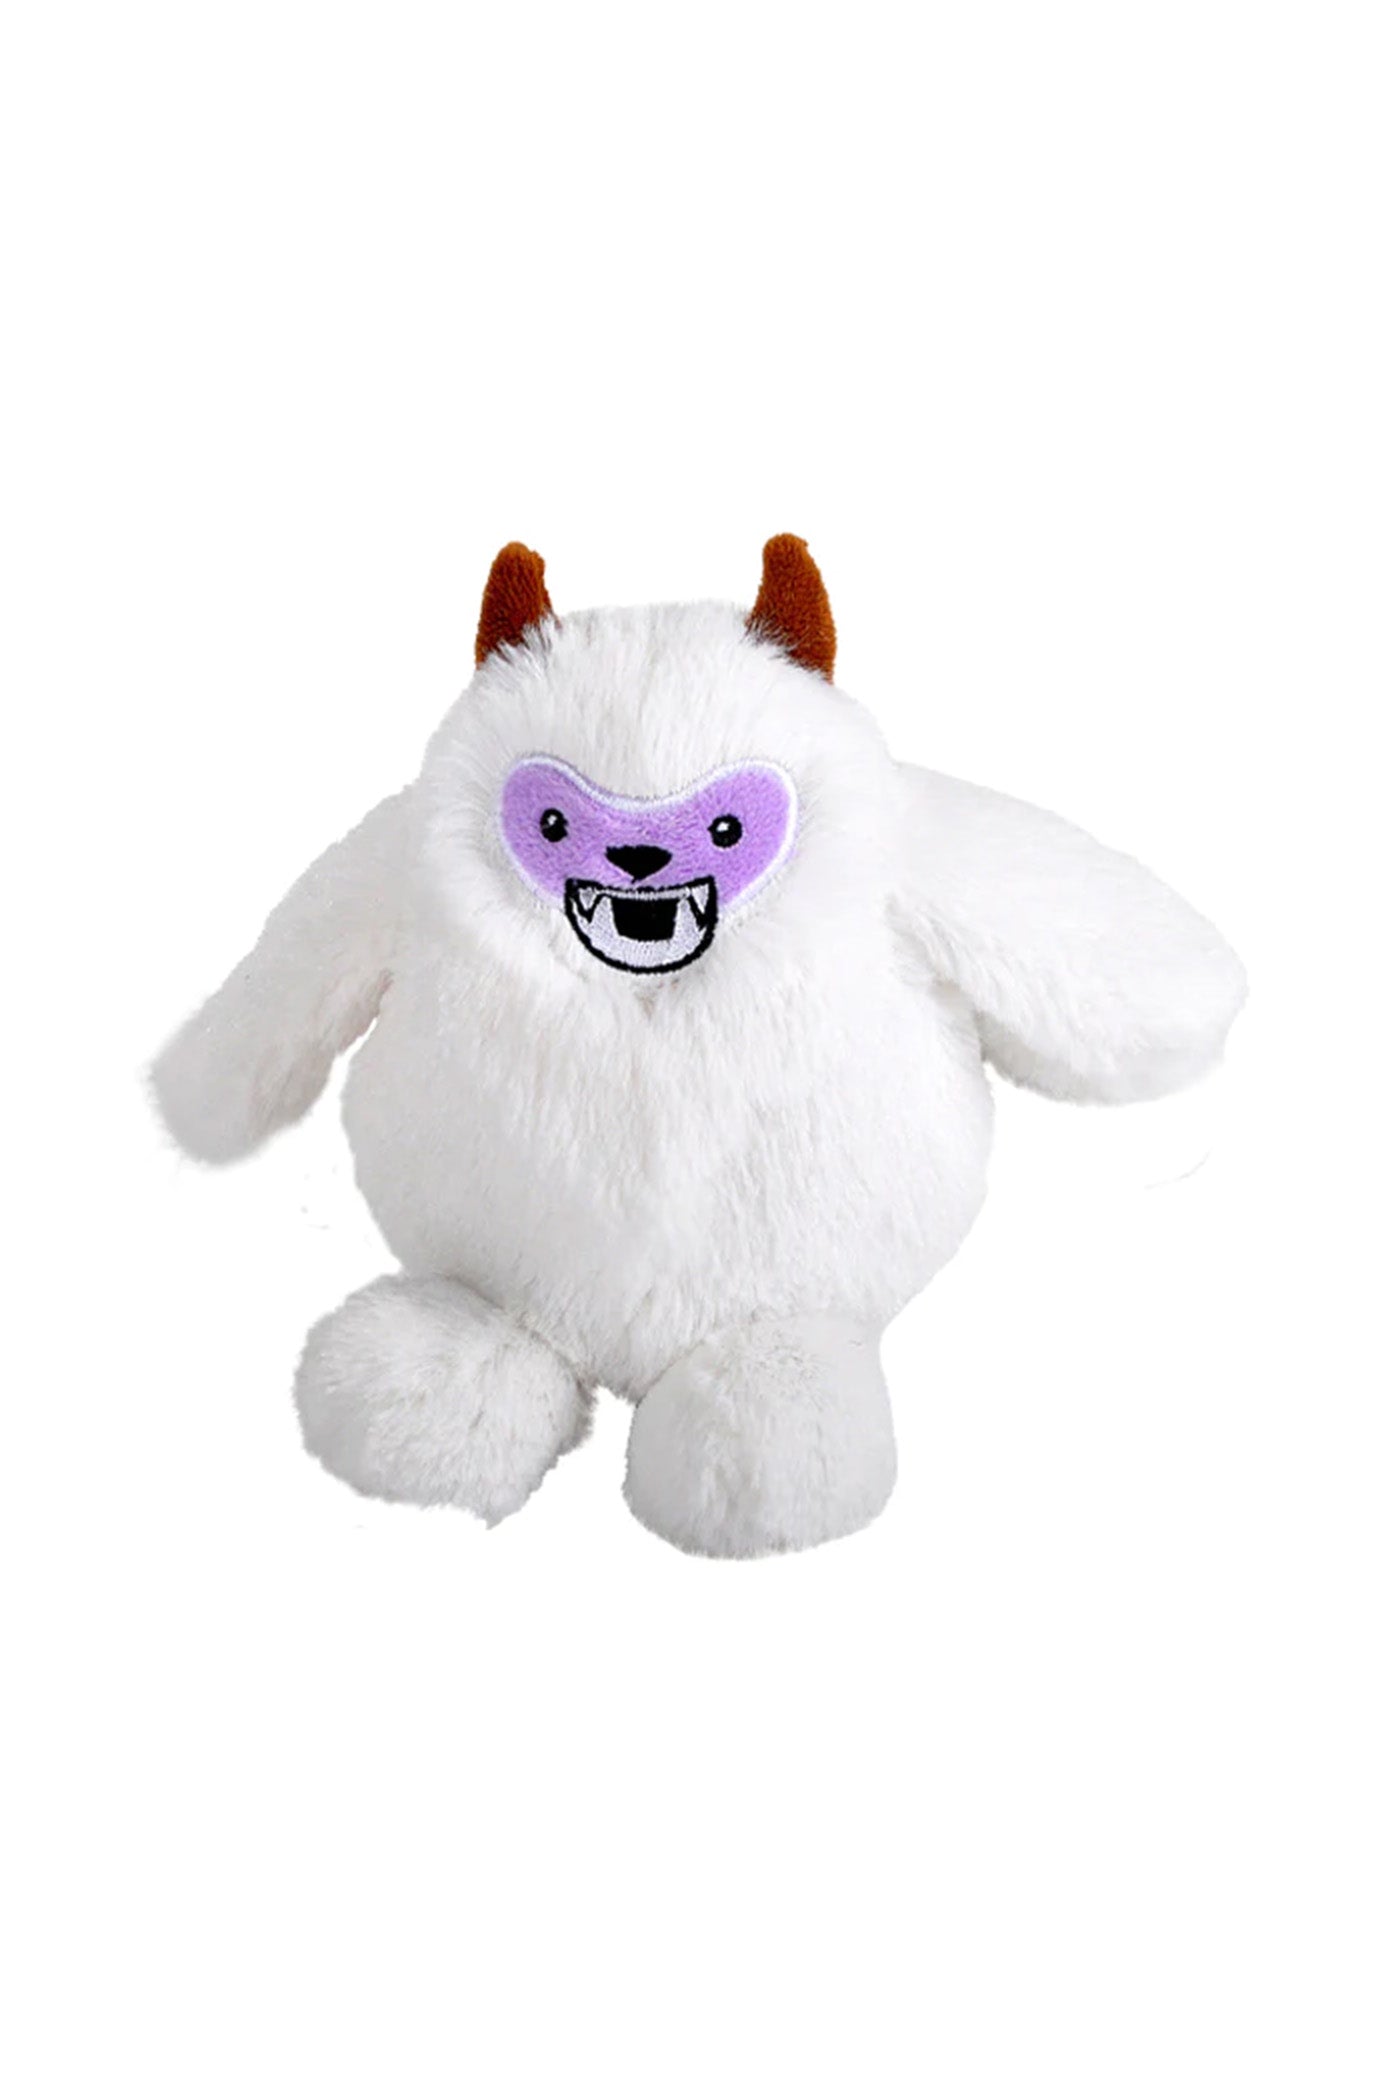 white Monsterkins Trash Foot Jr. Stuffed Animal